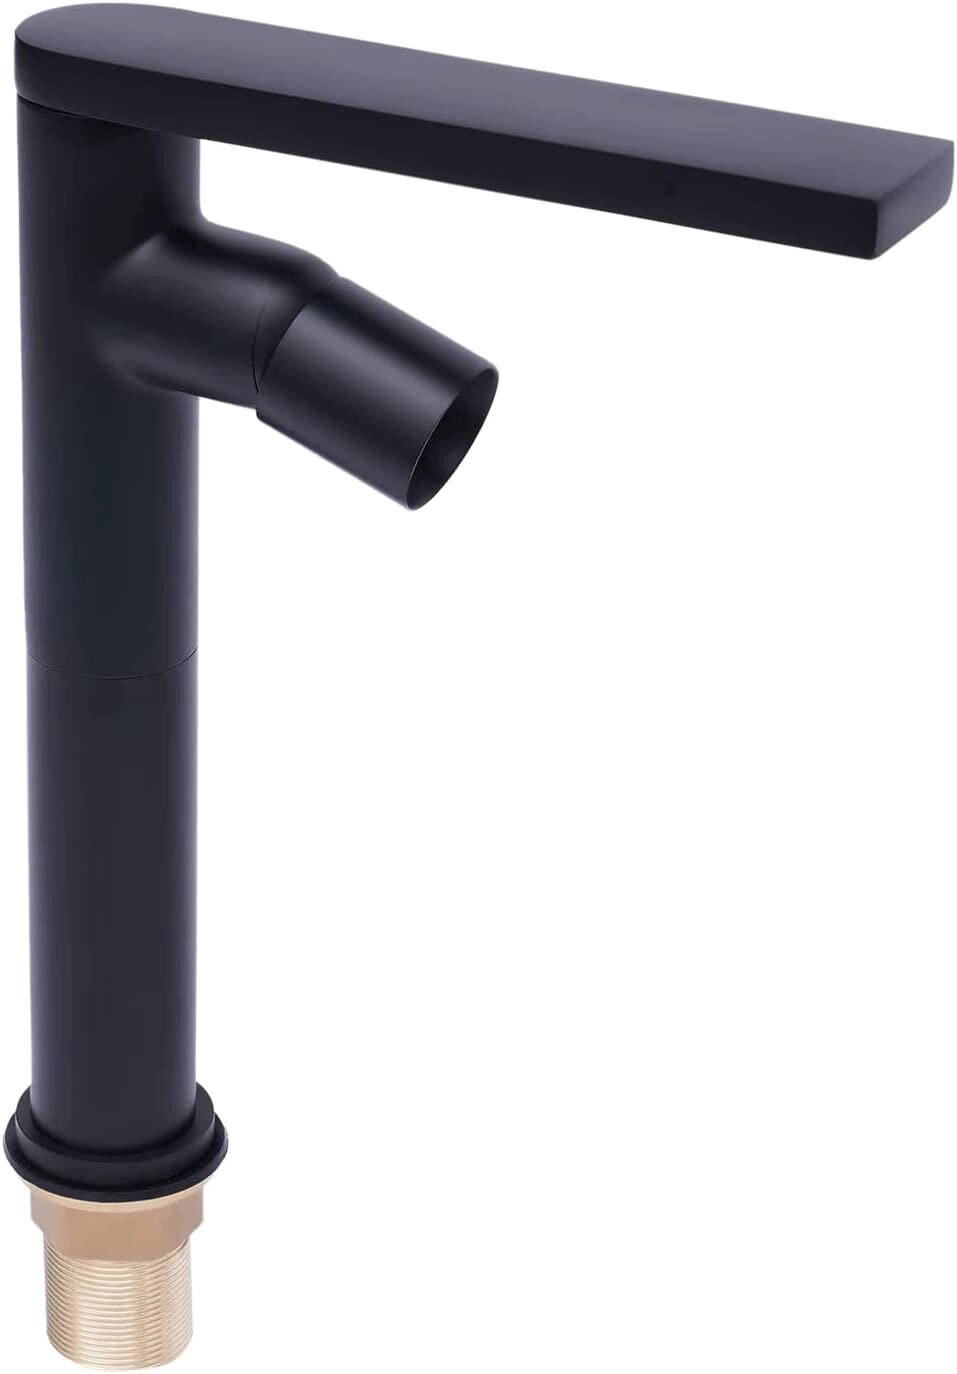 Змішувач для умивальника Чорний змішувач для умивальника, що обертається на 360 ° Змішувач для змішувача з від компанії магазин Апельсин - фото 1